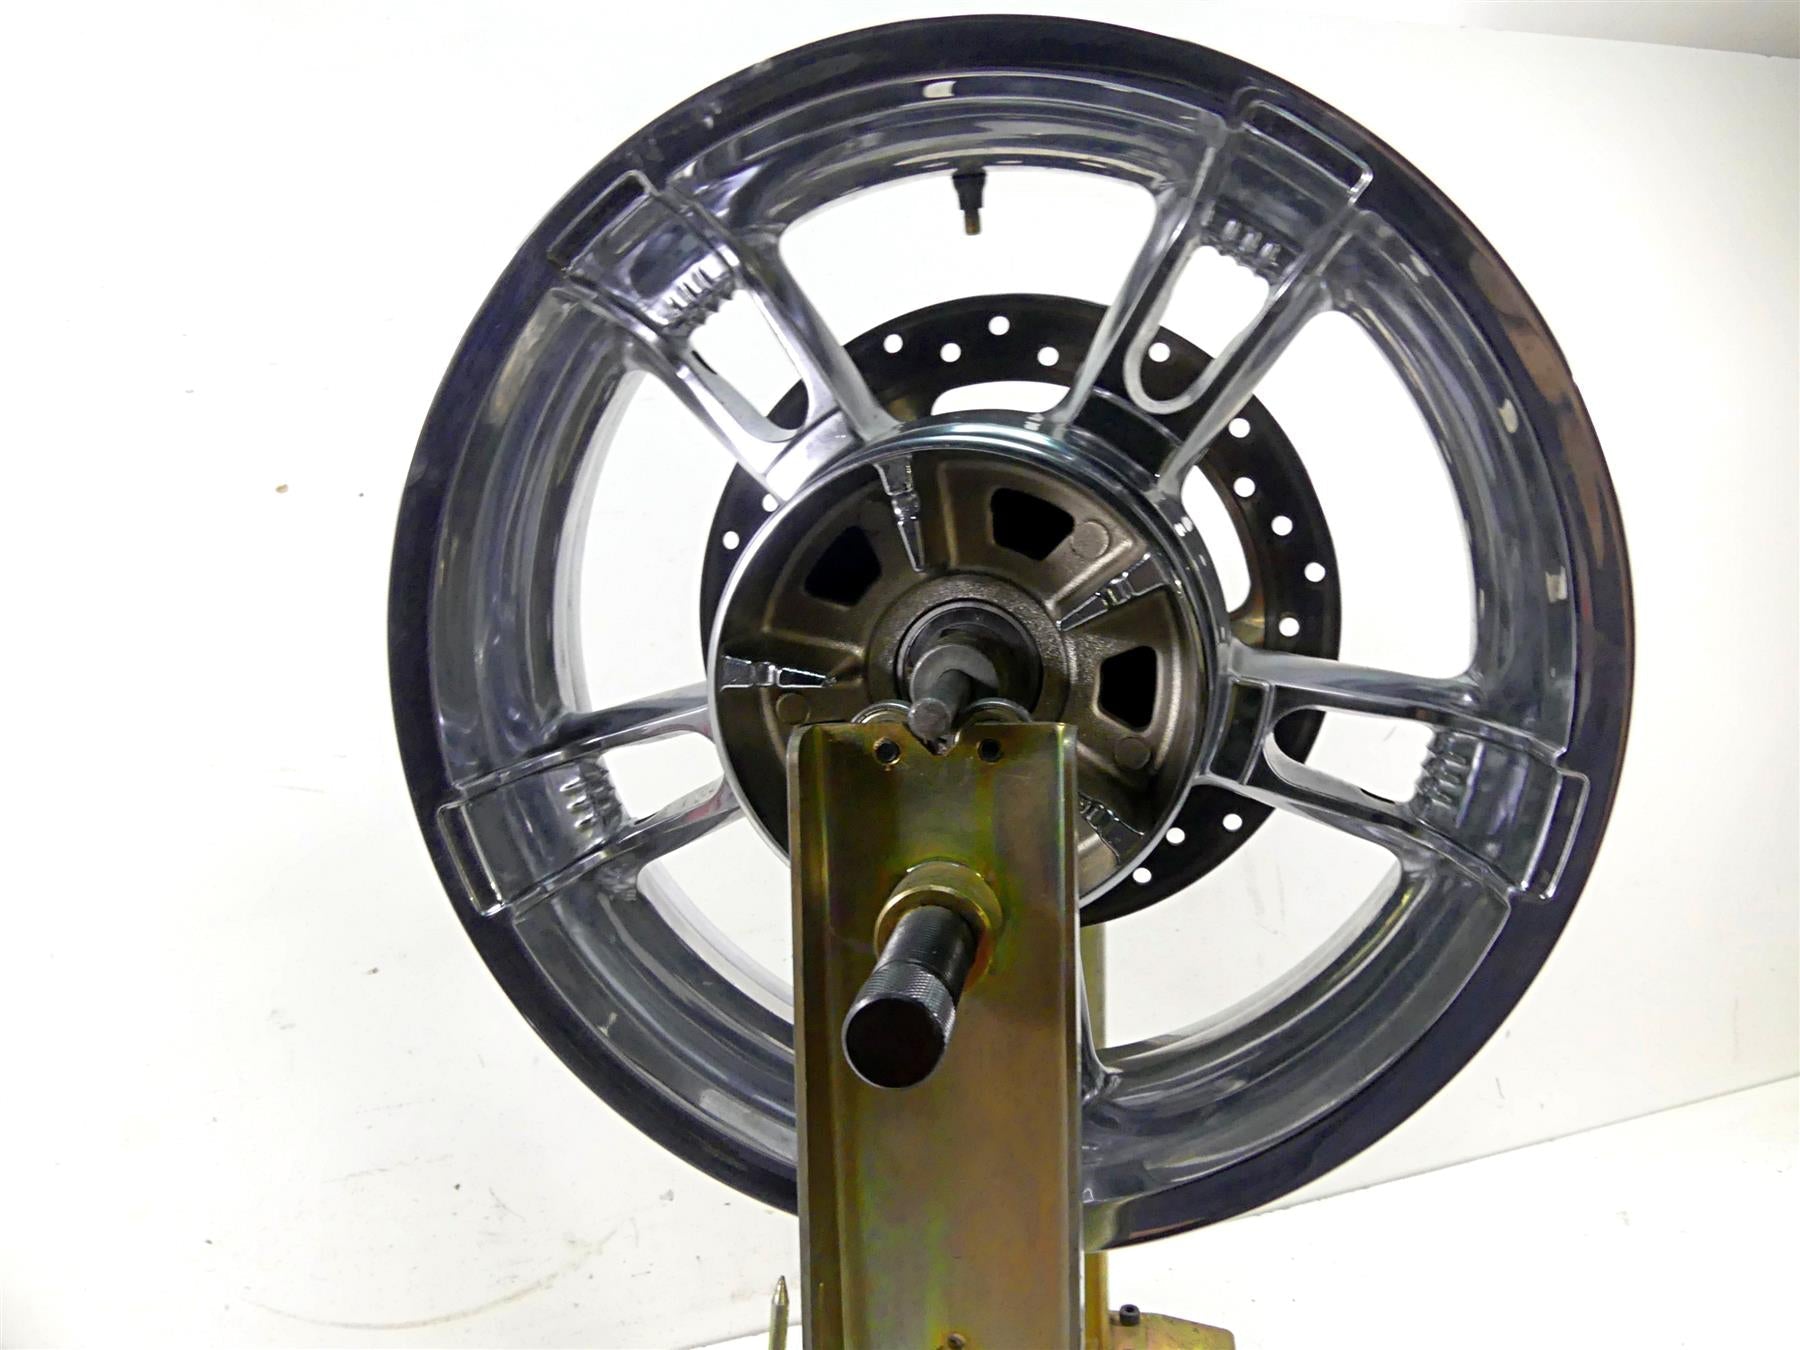 2015 Harley Touring FLHXS Street Glide Rear Wheel Rim Enforcer 5x16 40900346 | Mototech271